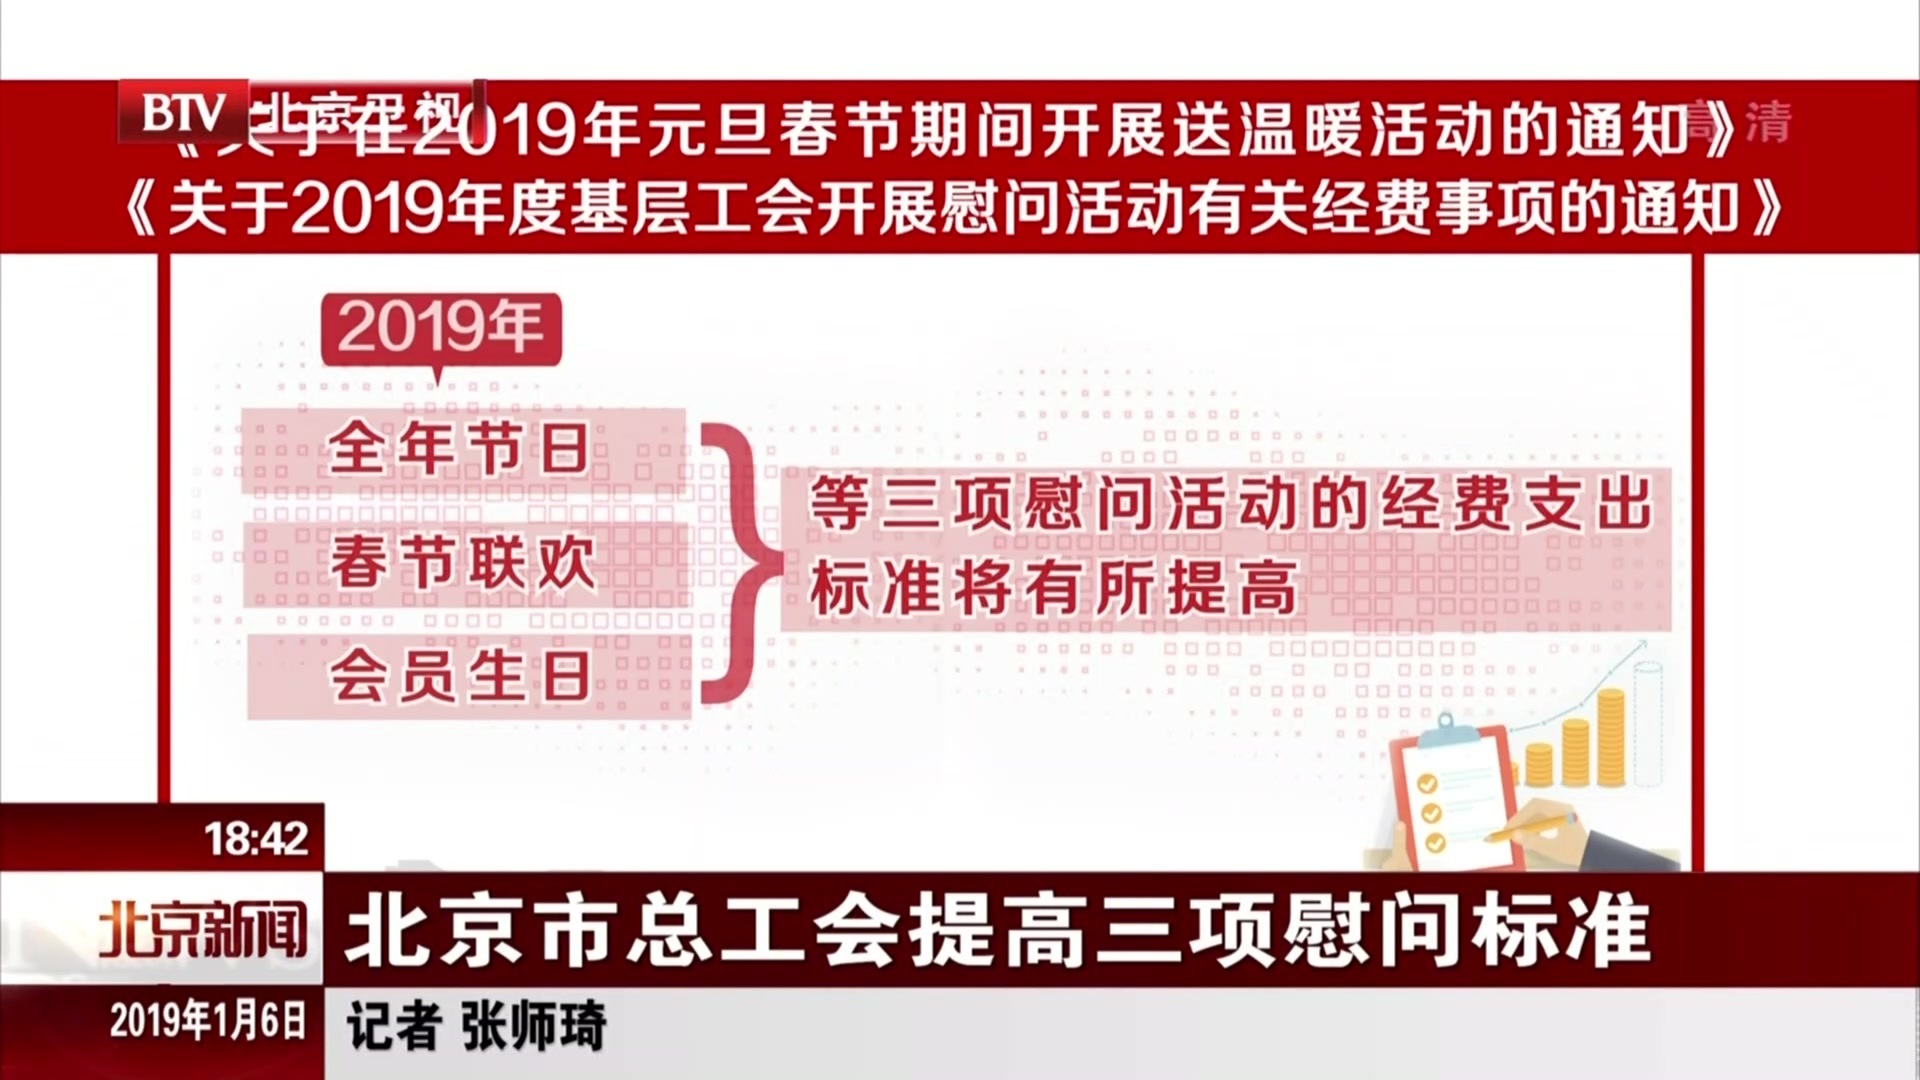 北京市总工会提高三项慰问标准